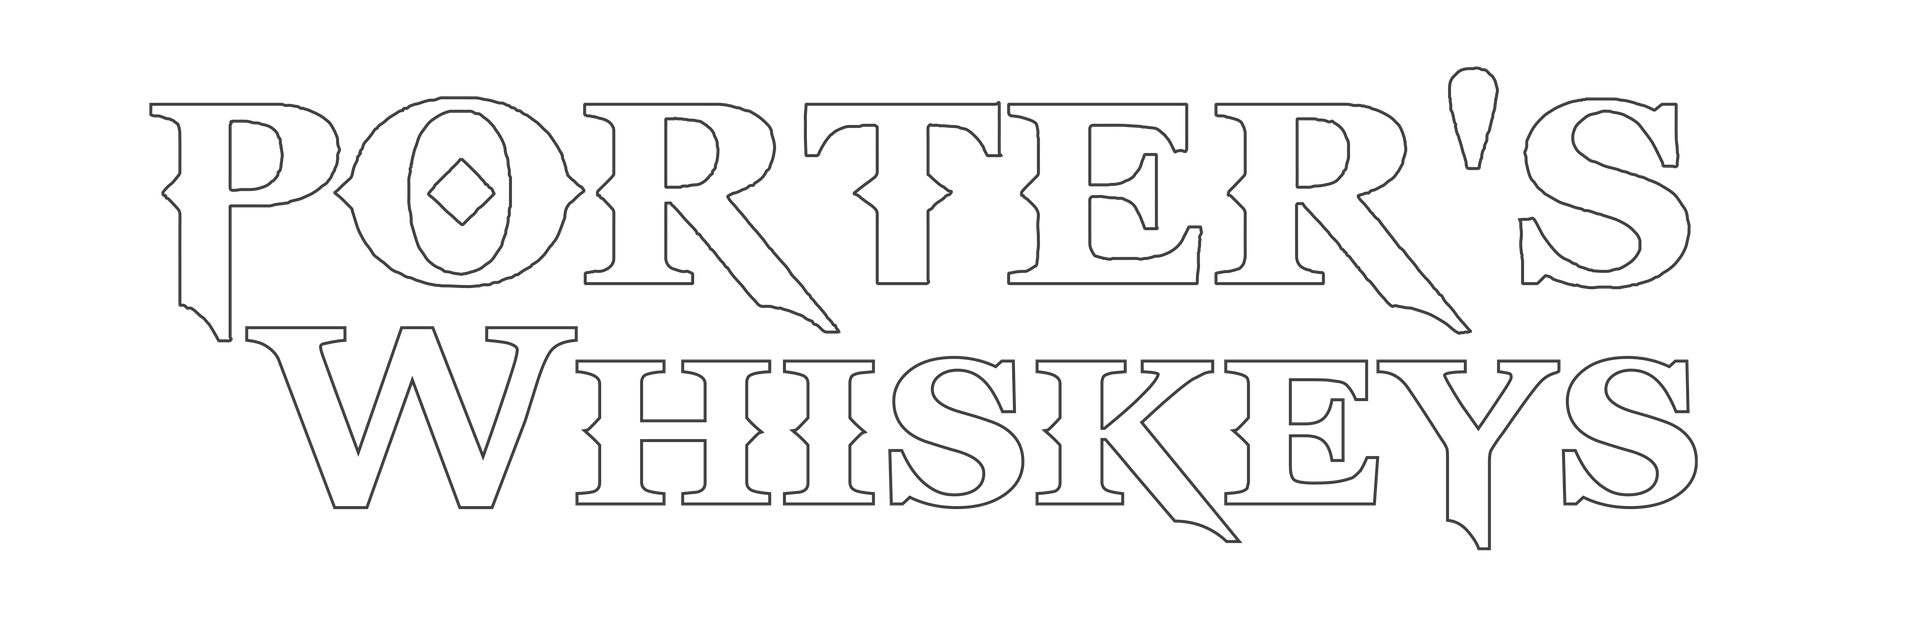 Porter's Whiskeys Logo